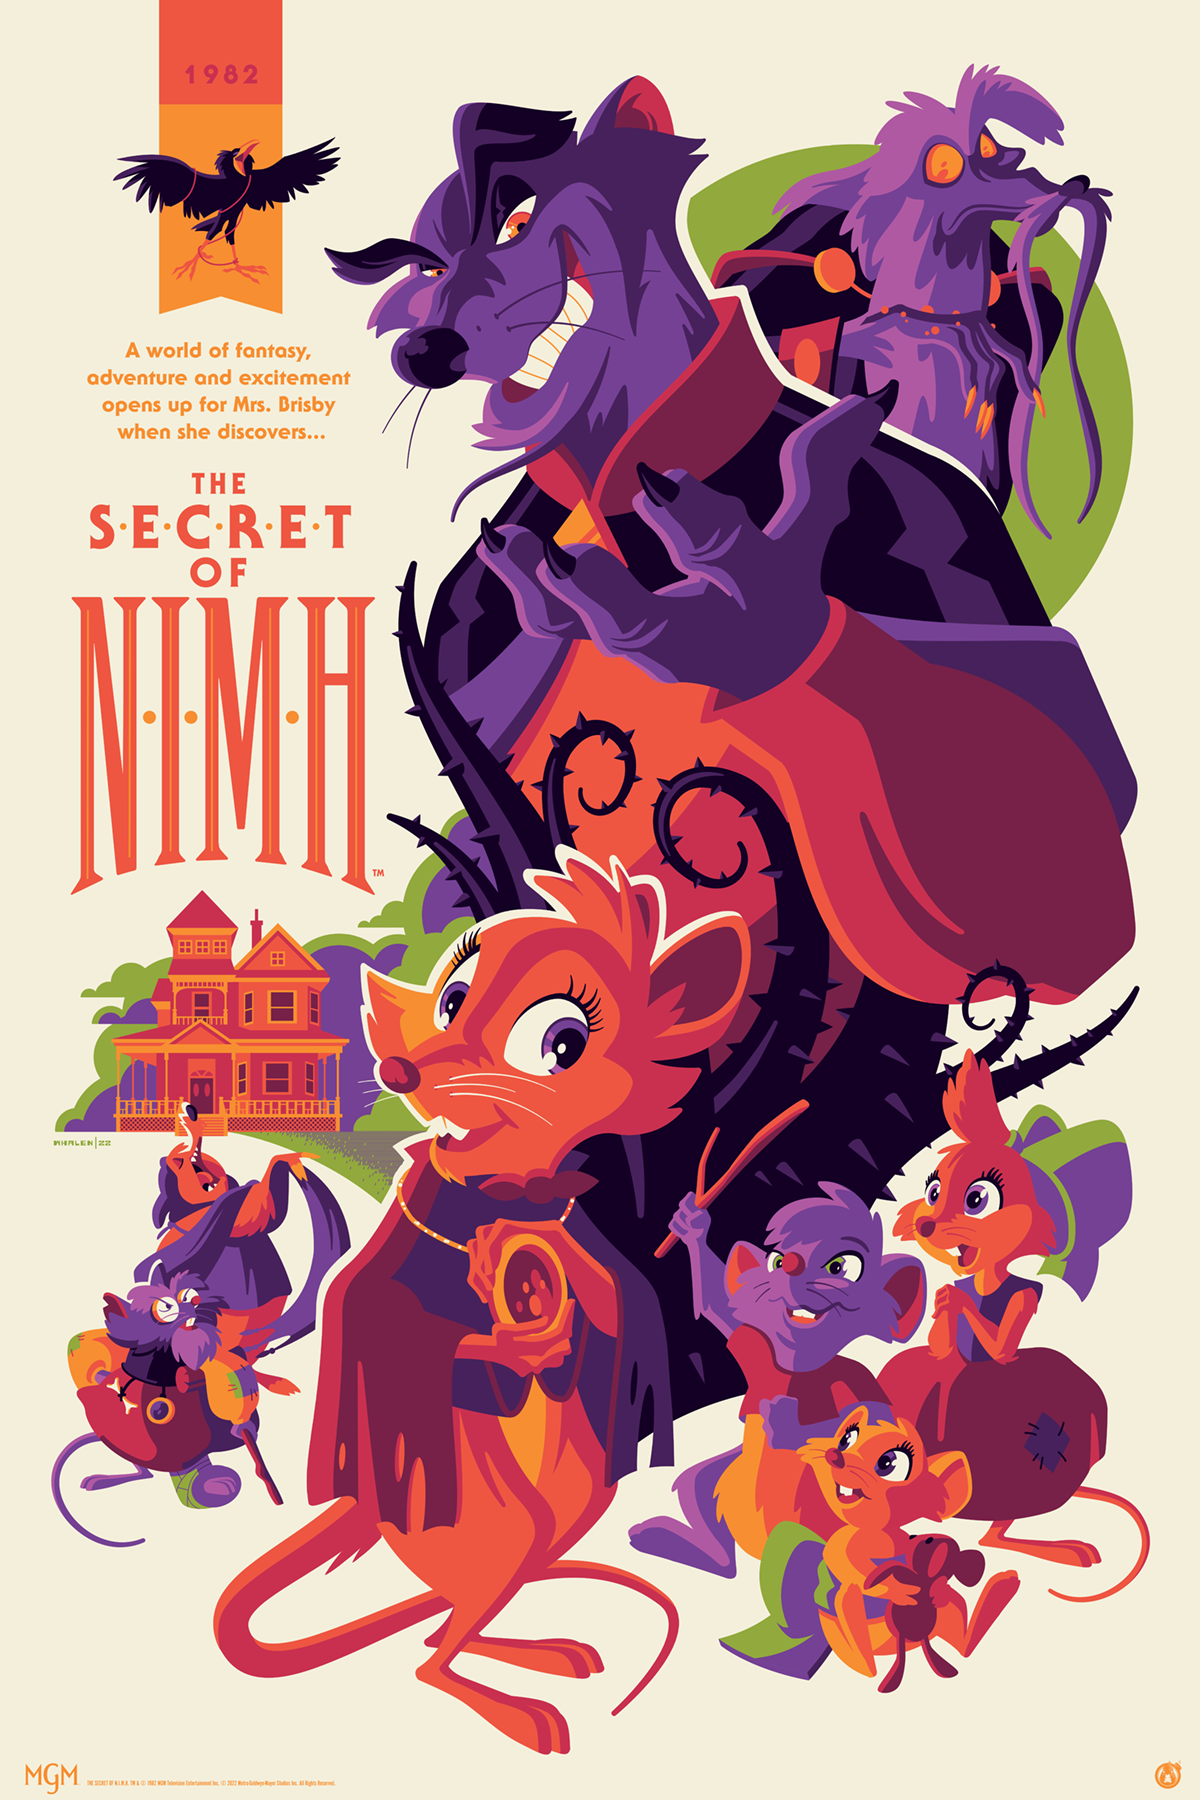 THE SECRET OF NIMH